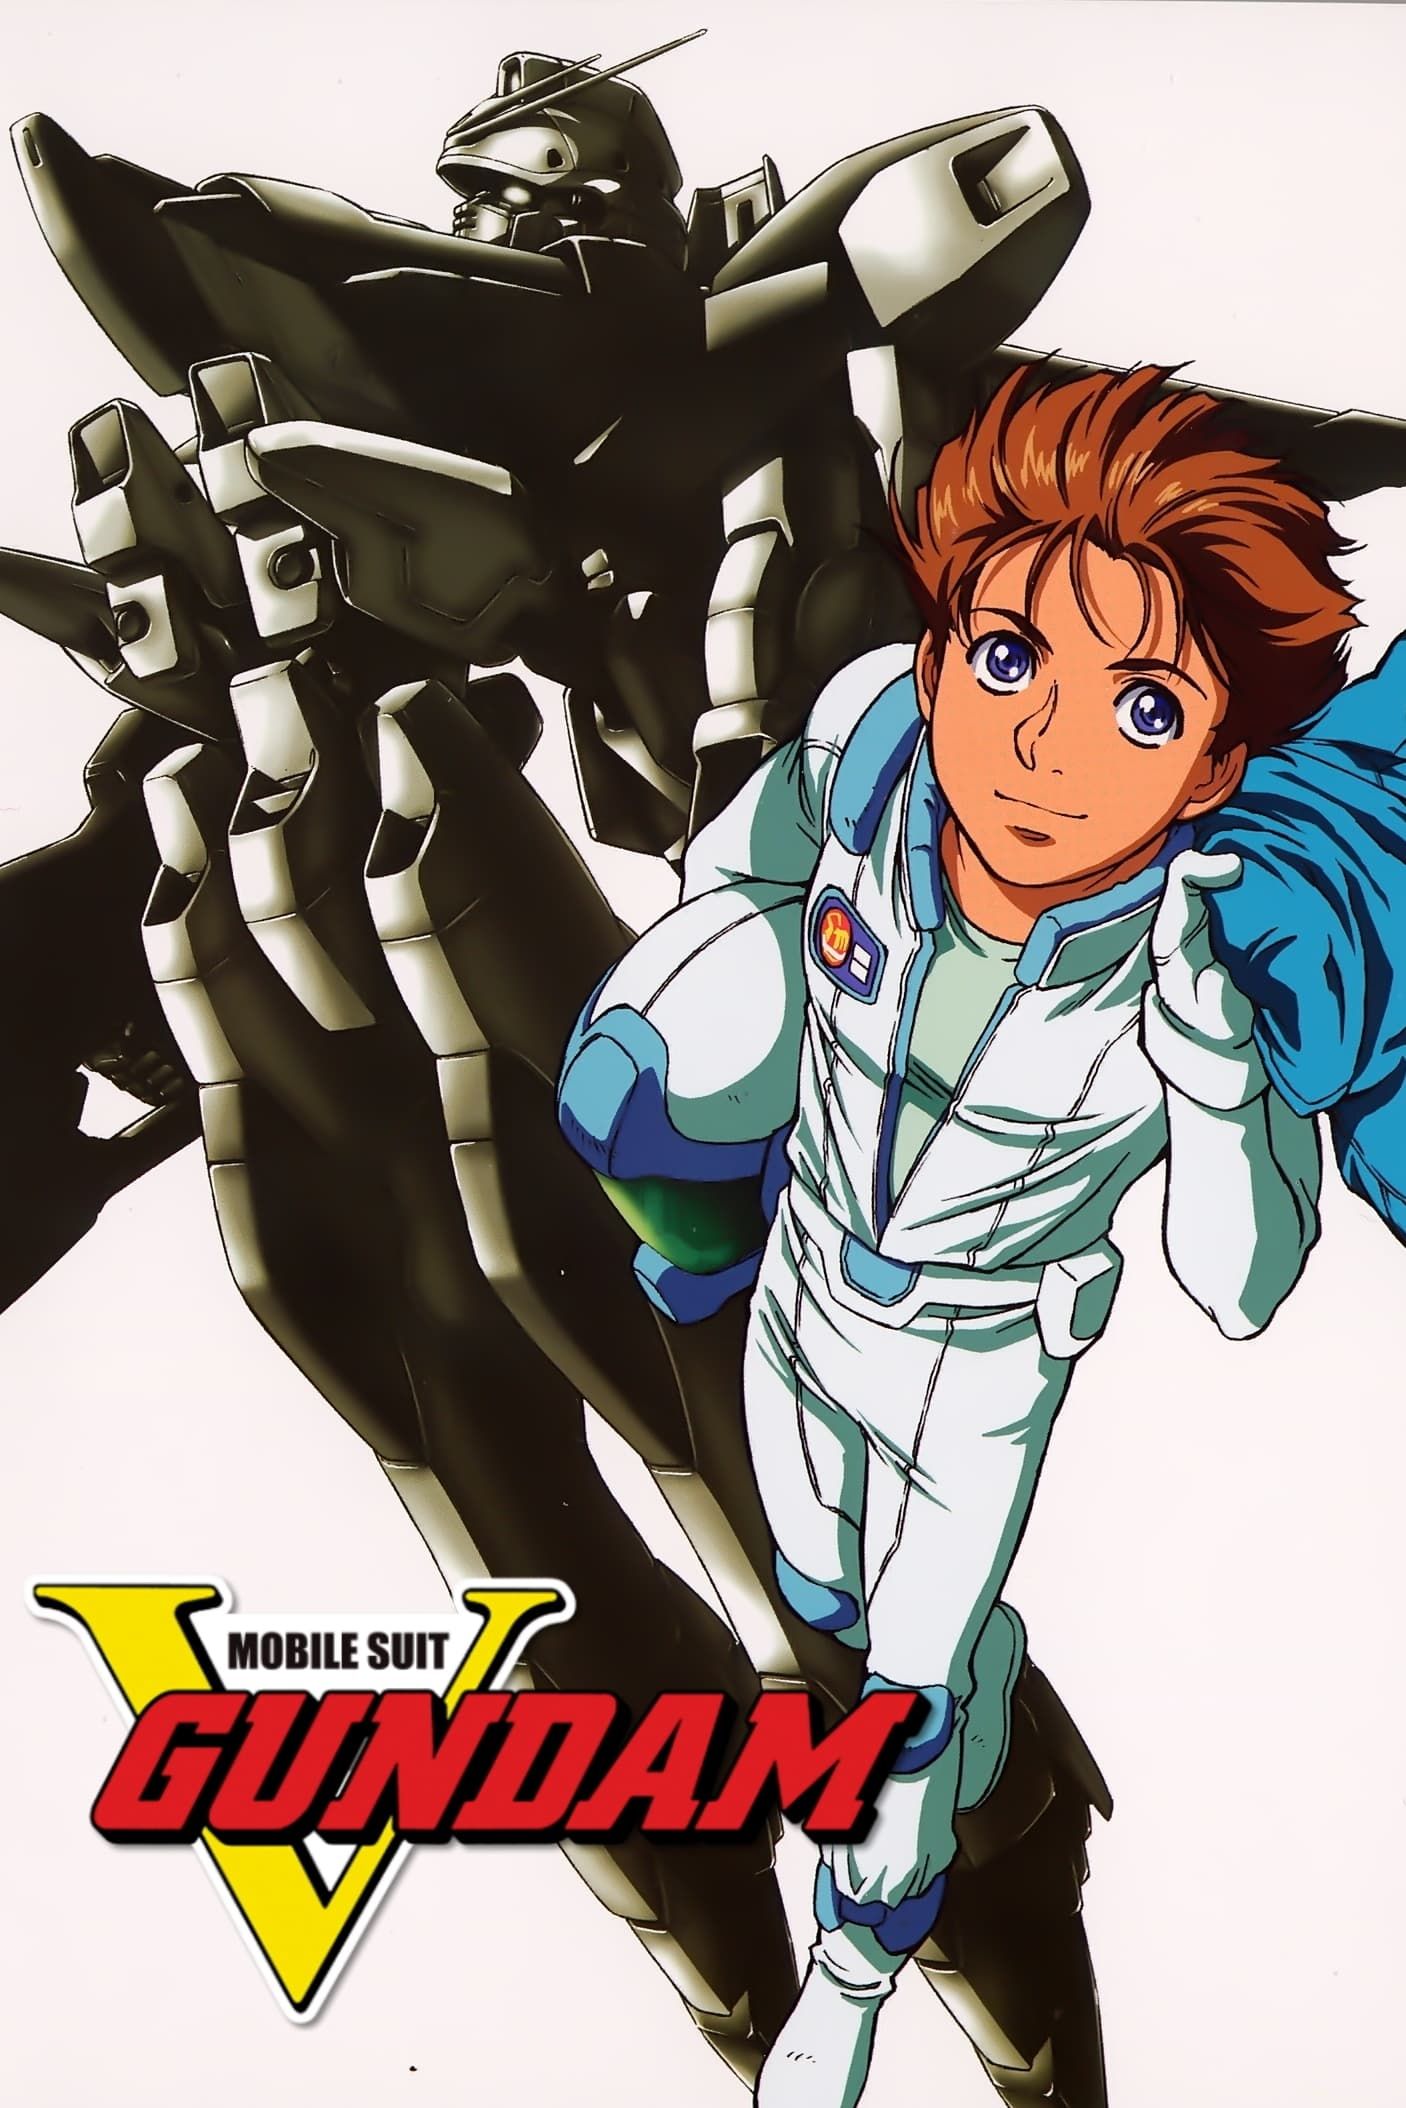 [Full Series] Mobile Suit Victory Gundam (TV) (Sub)